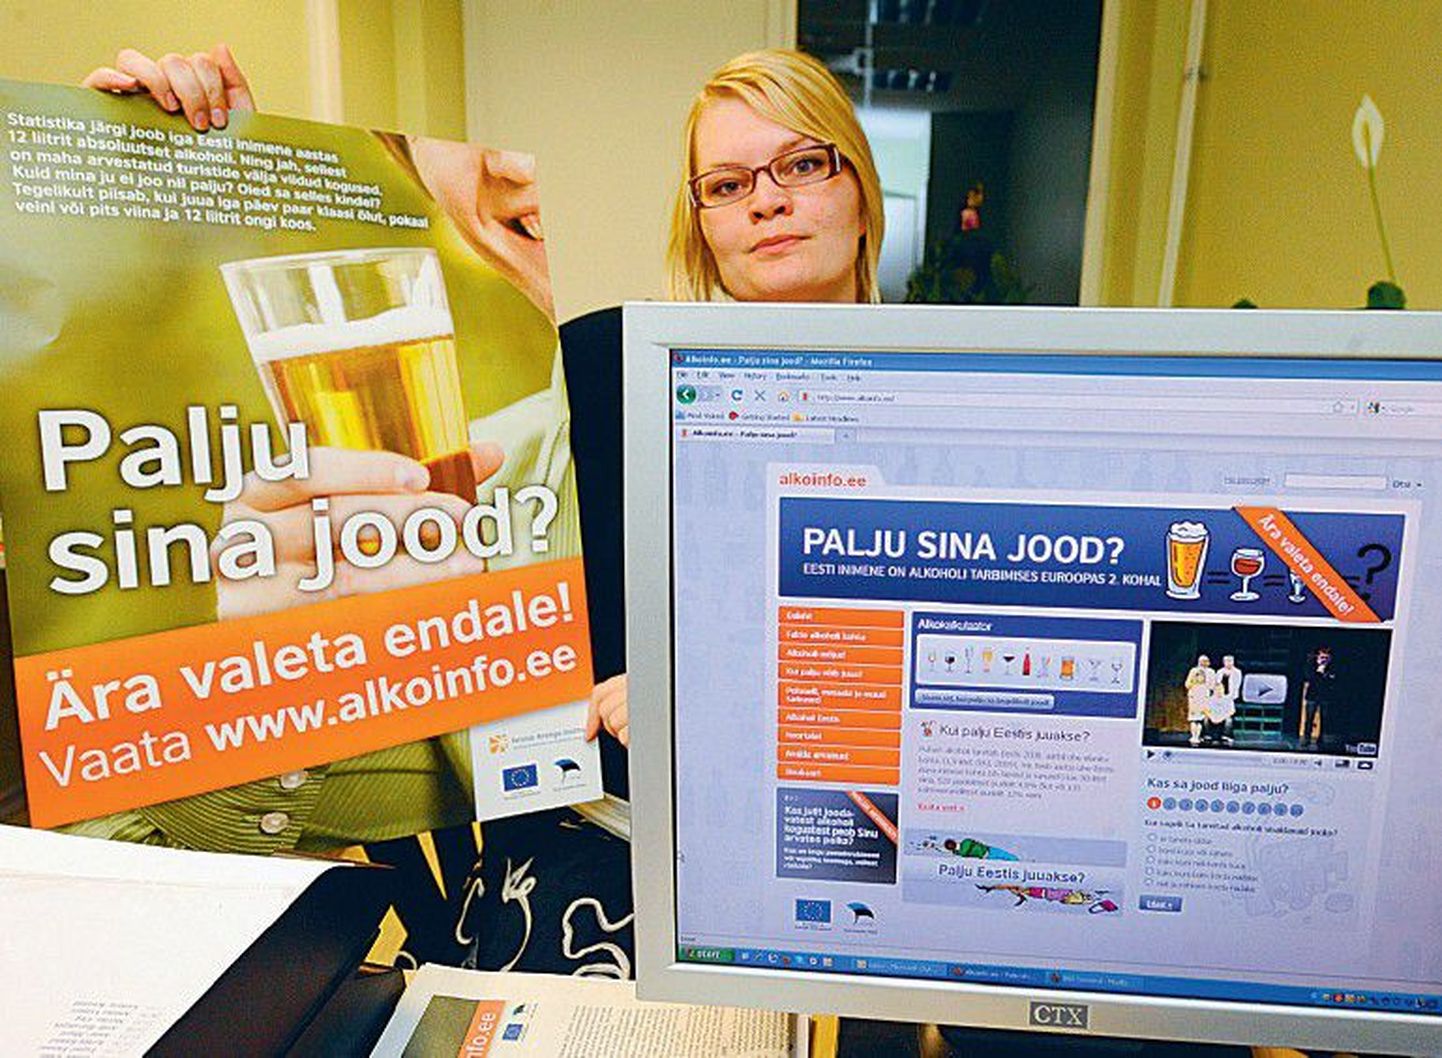 Tervise Arengu Instituudi avalike suhete nõunik Maris Jakobson rõõmustab, et kümned tuhanded inimesed on külastanud nende kampaania «Palju sina jood?» ajaks avatud Alkoinfo kodulehekülge.